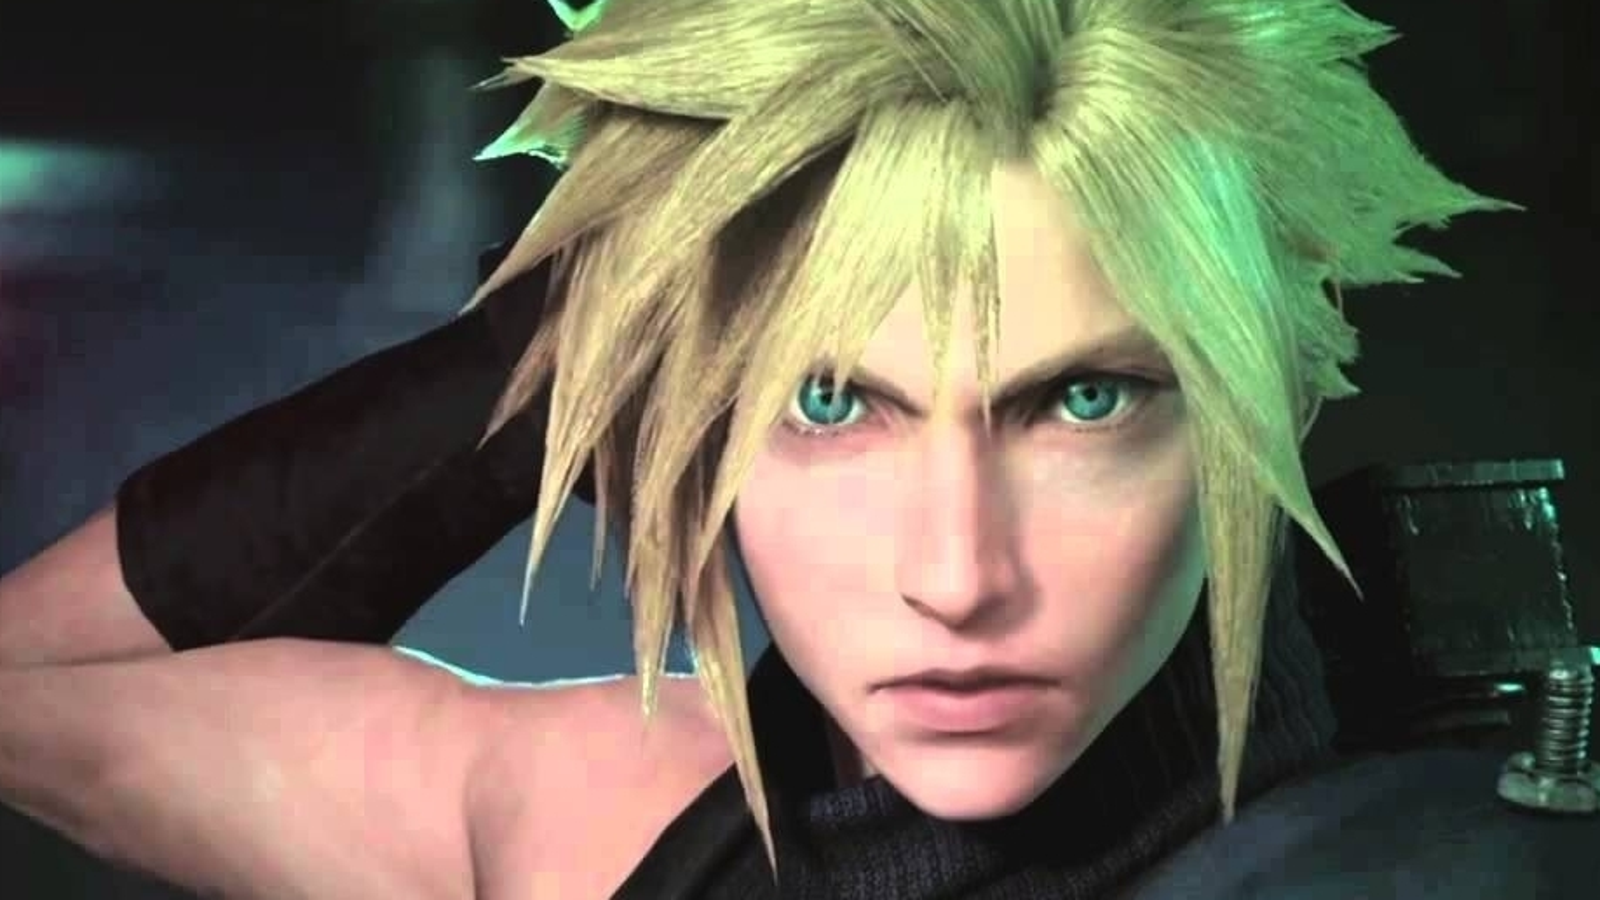 Novas imagens de Final Fantasy 7 Remake são reveladas